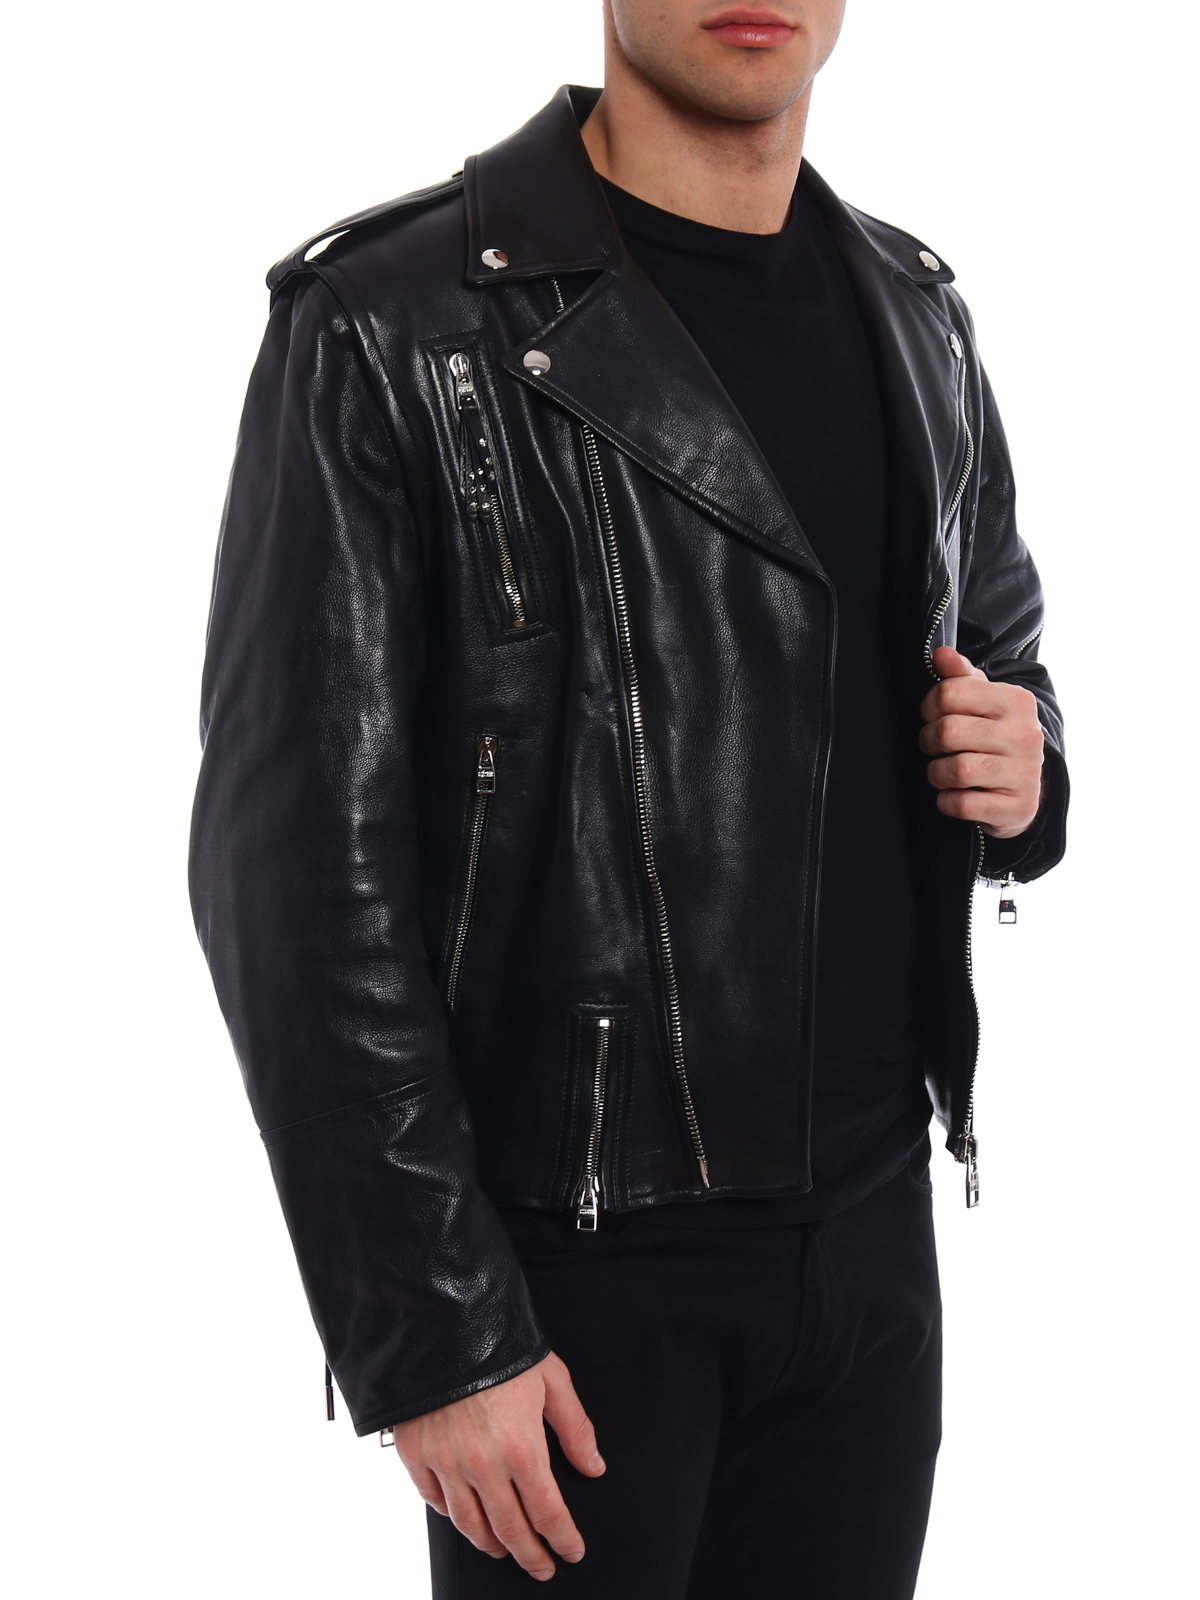 alexander mcqueen leather jacket mens